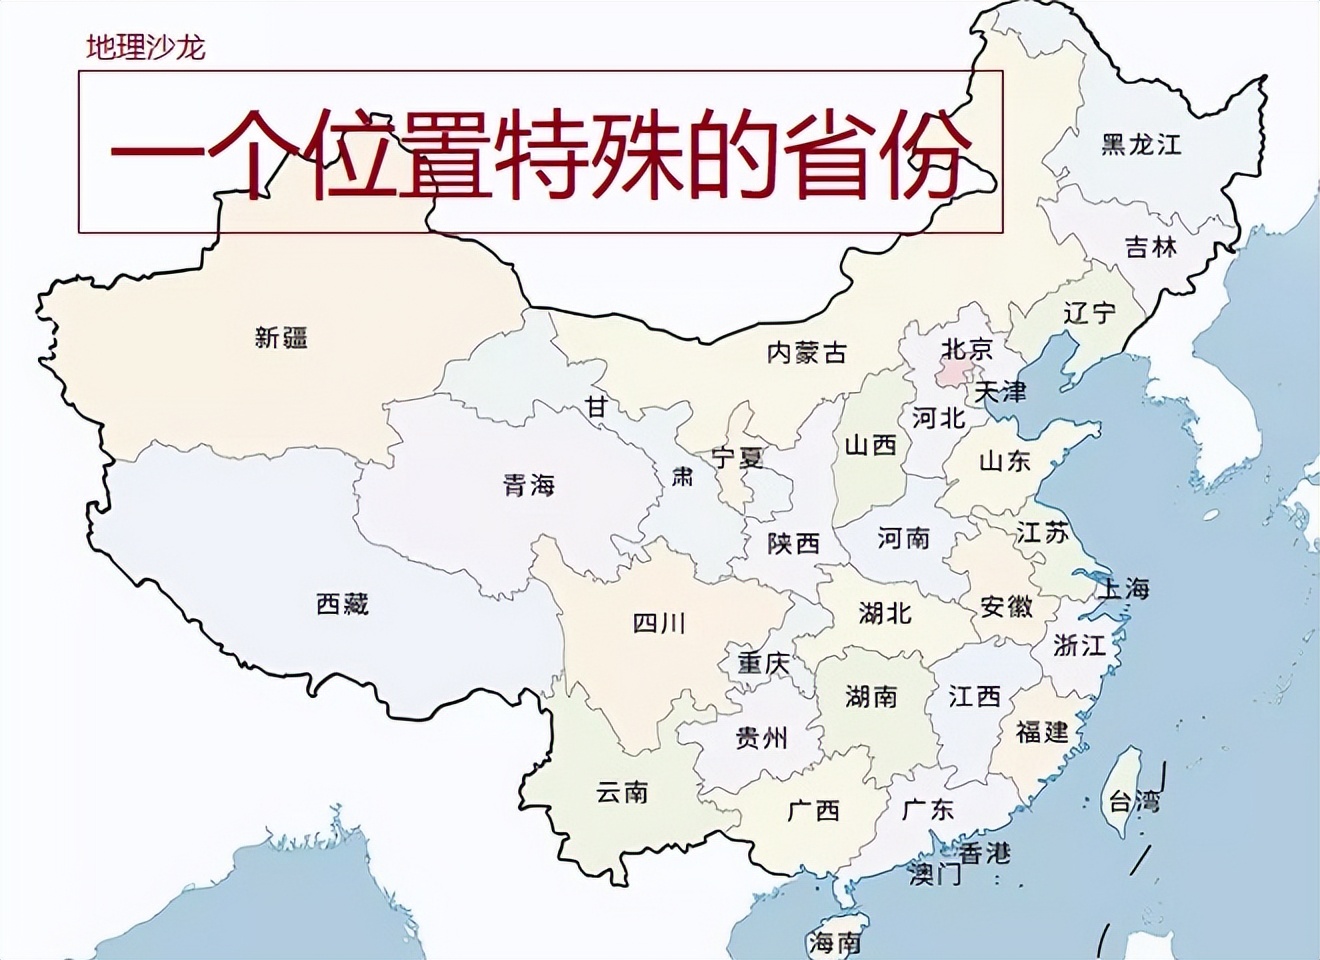 中国面积最大的省份,中国面积最大的省份是哪个